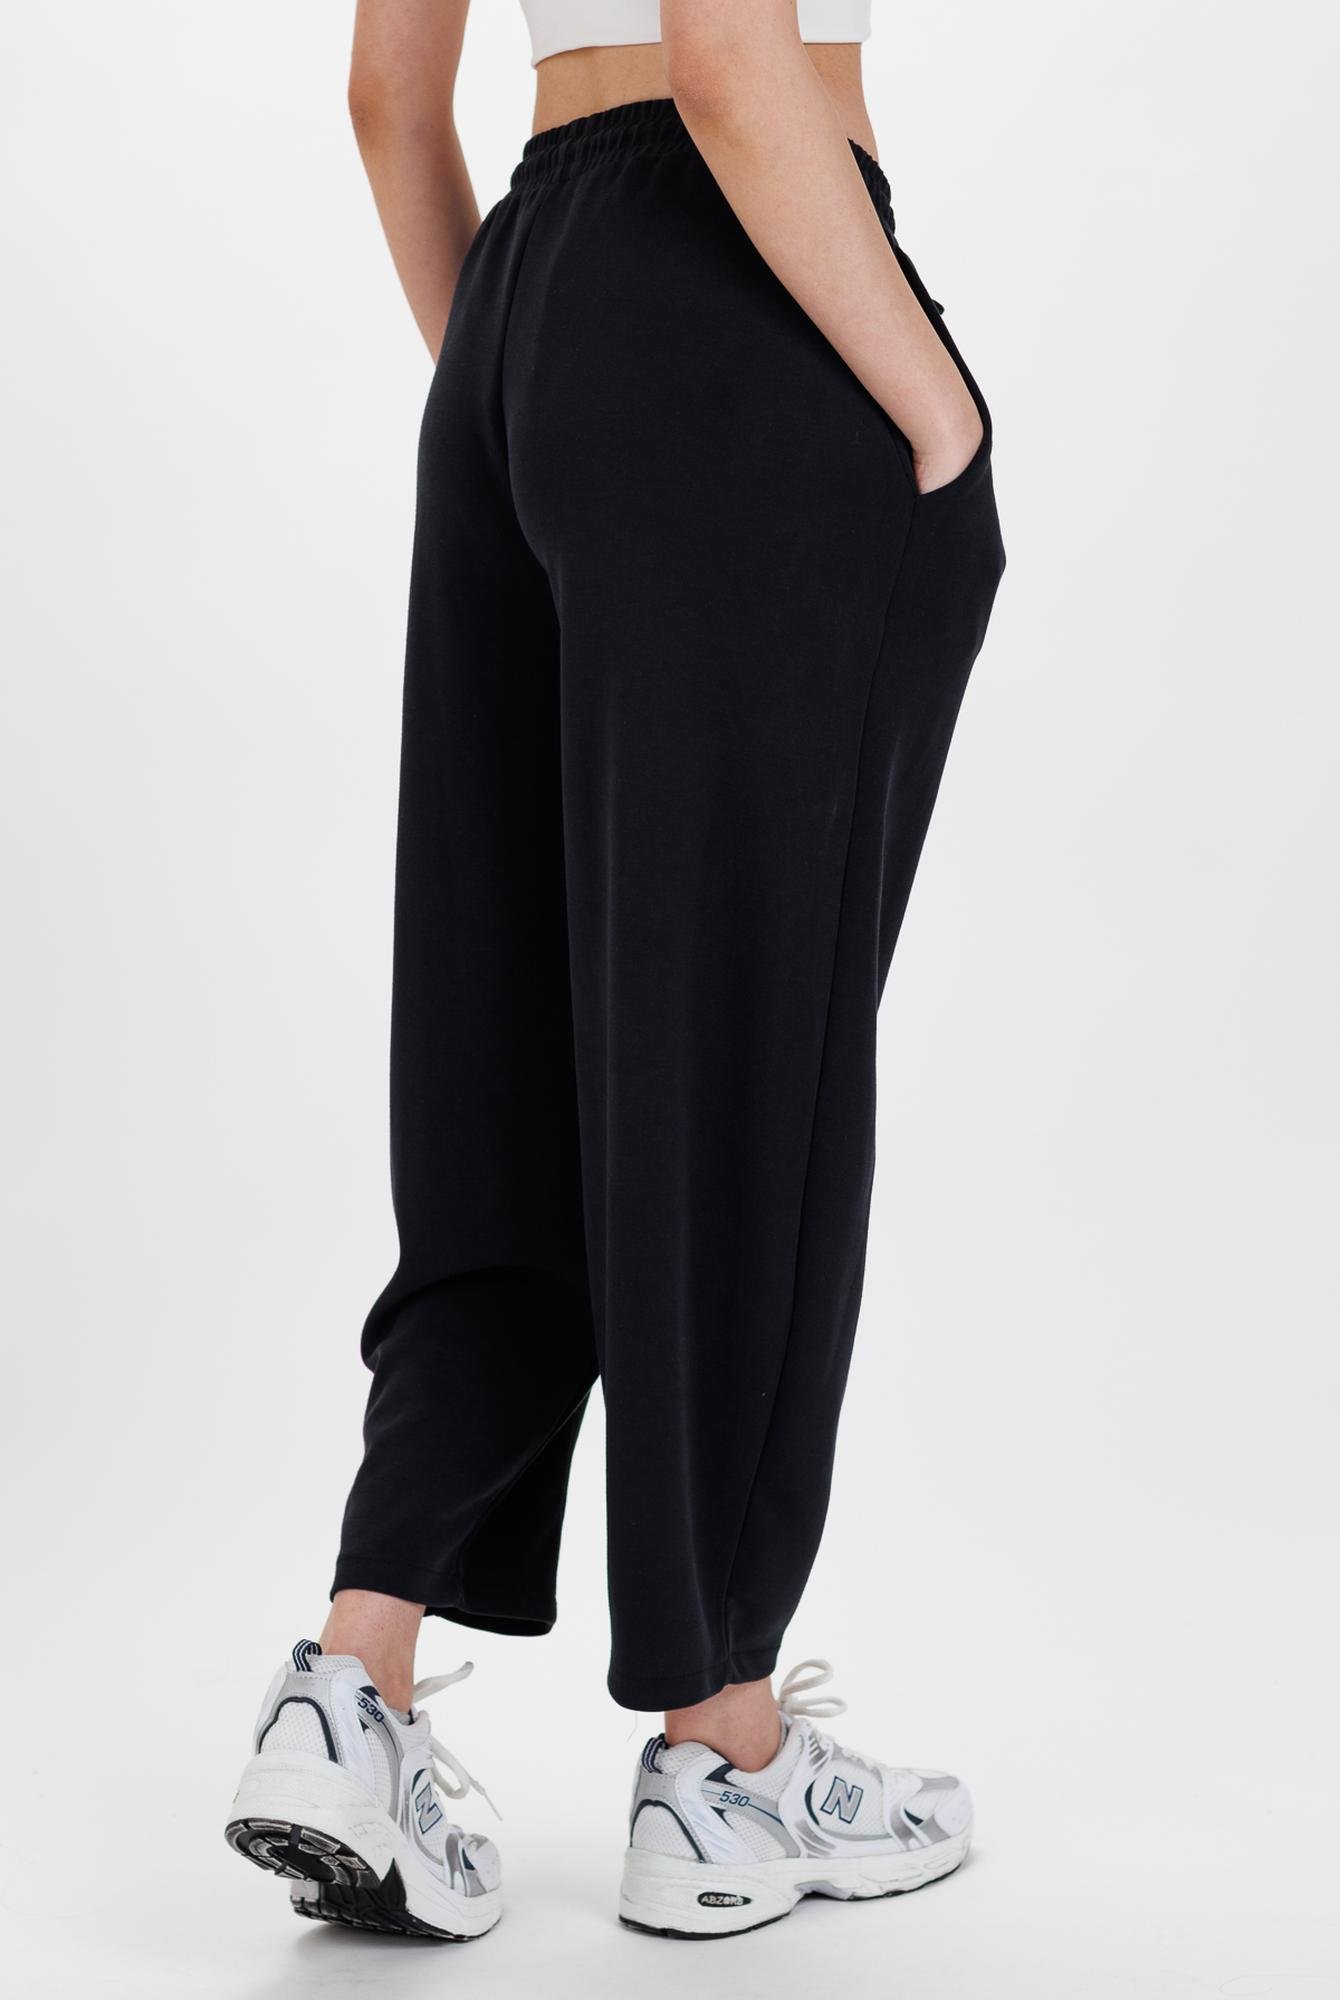  Ecrou Kadın Siyah Şalvar Kalıp Havuç Paça Ultra Soft Modal Örme Pantolon